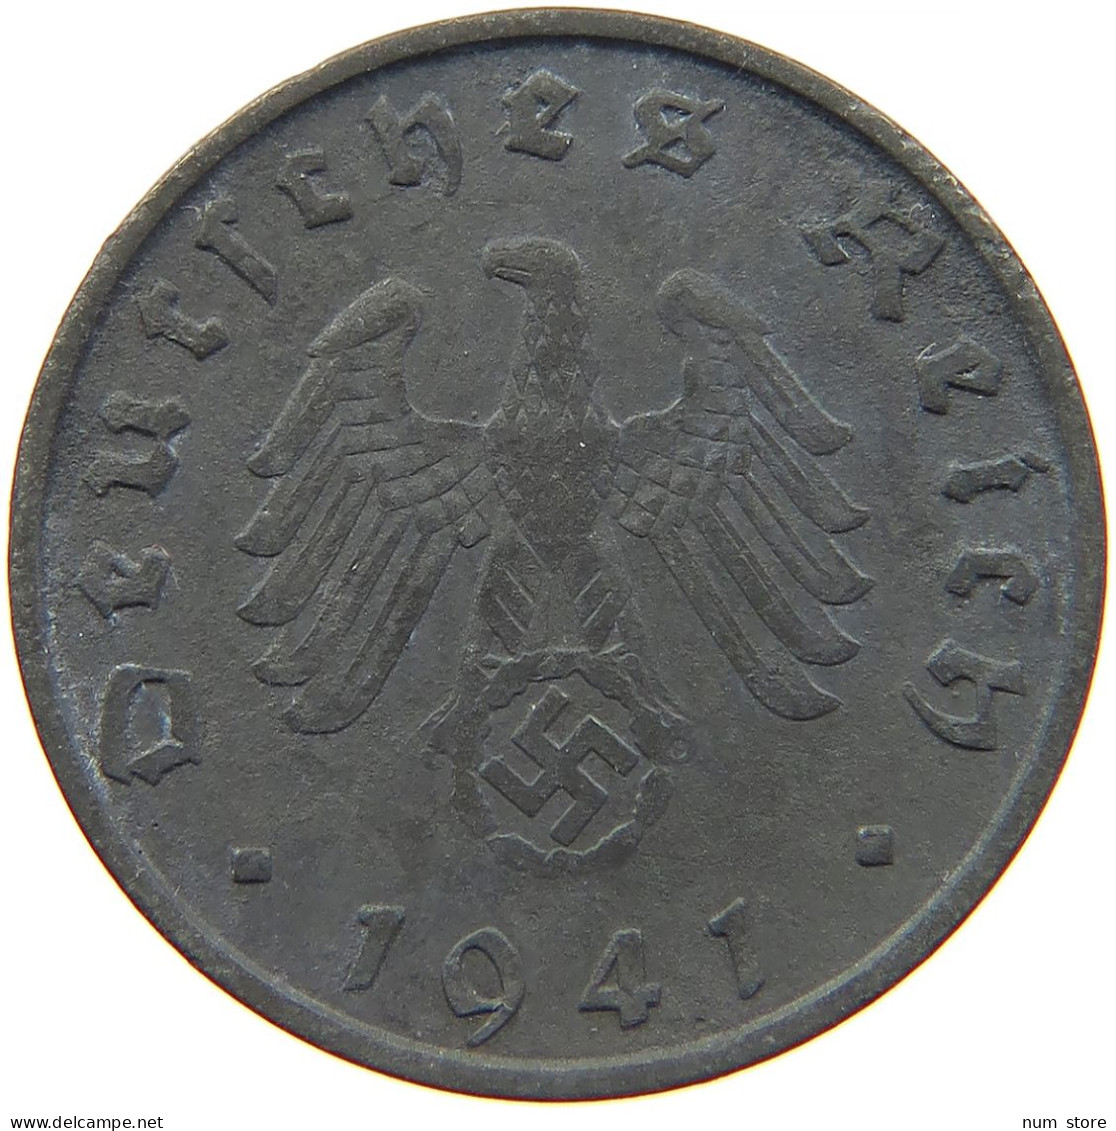 GERMANY 10 REICHSPFENNIG 1941 B #s095 0031 - 10 Reichspfennig